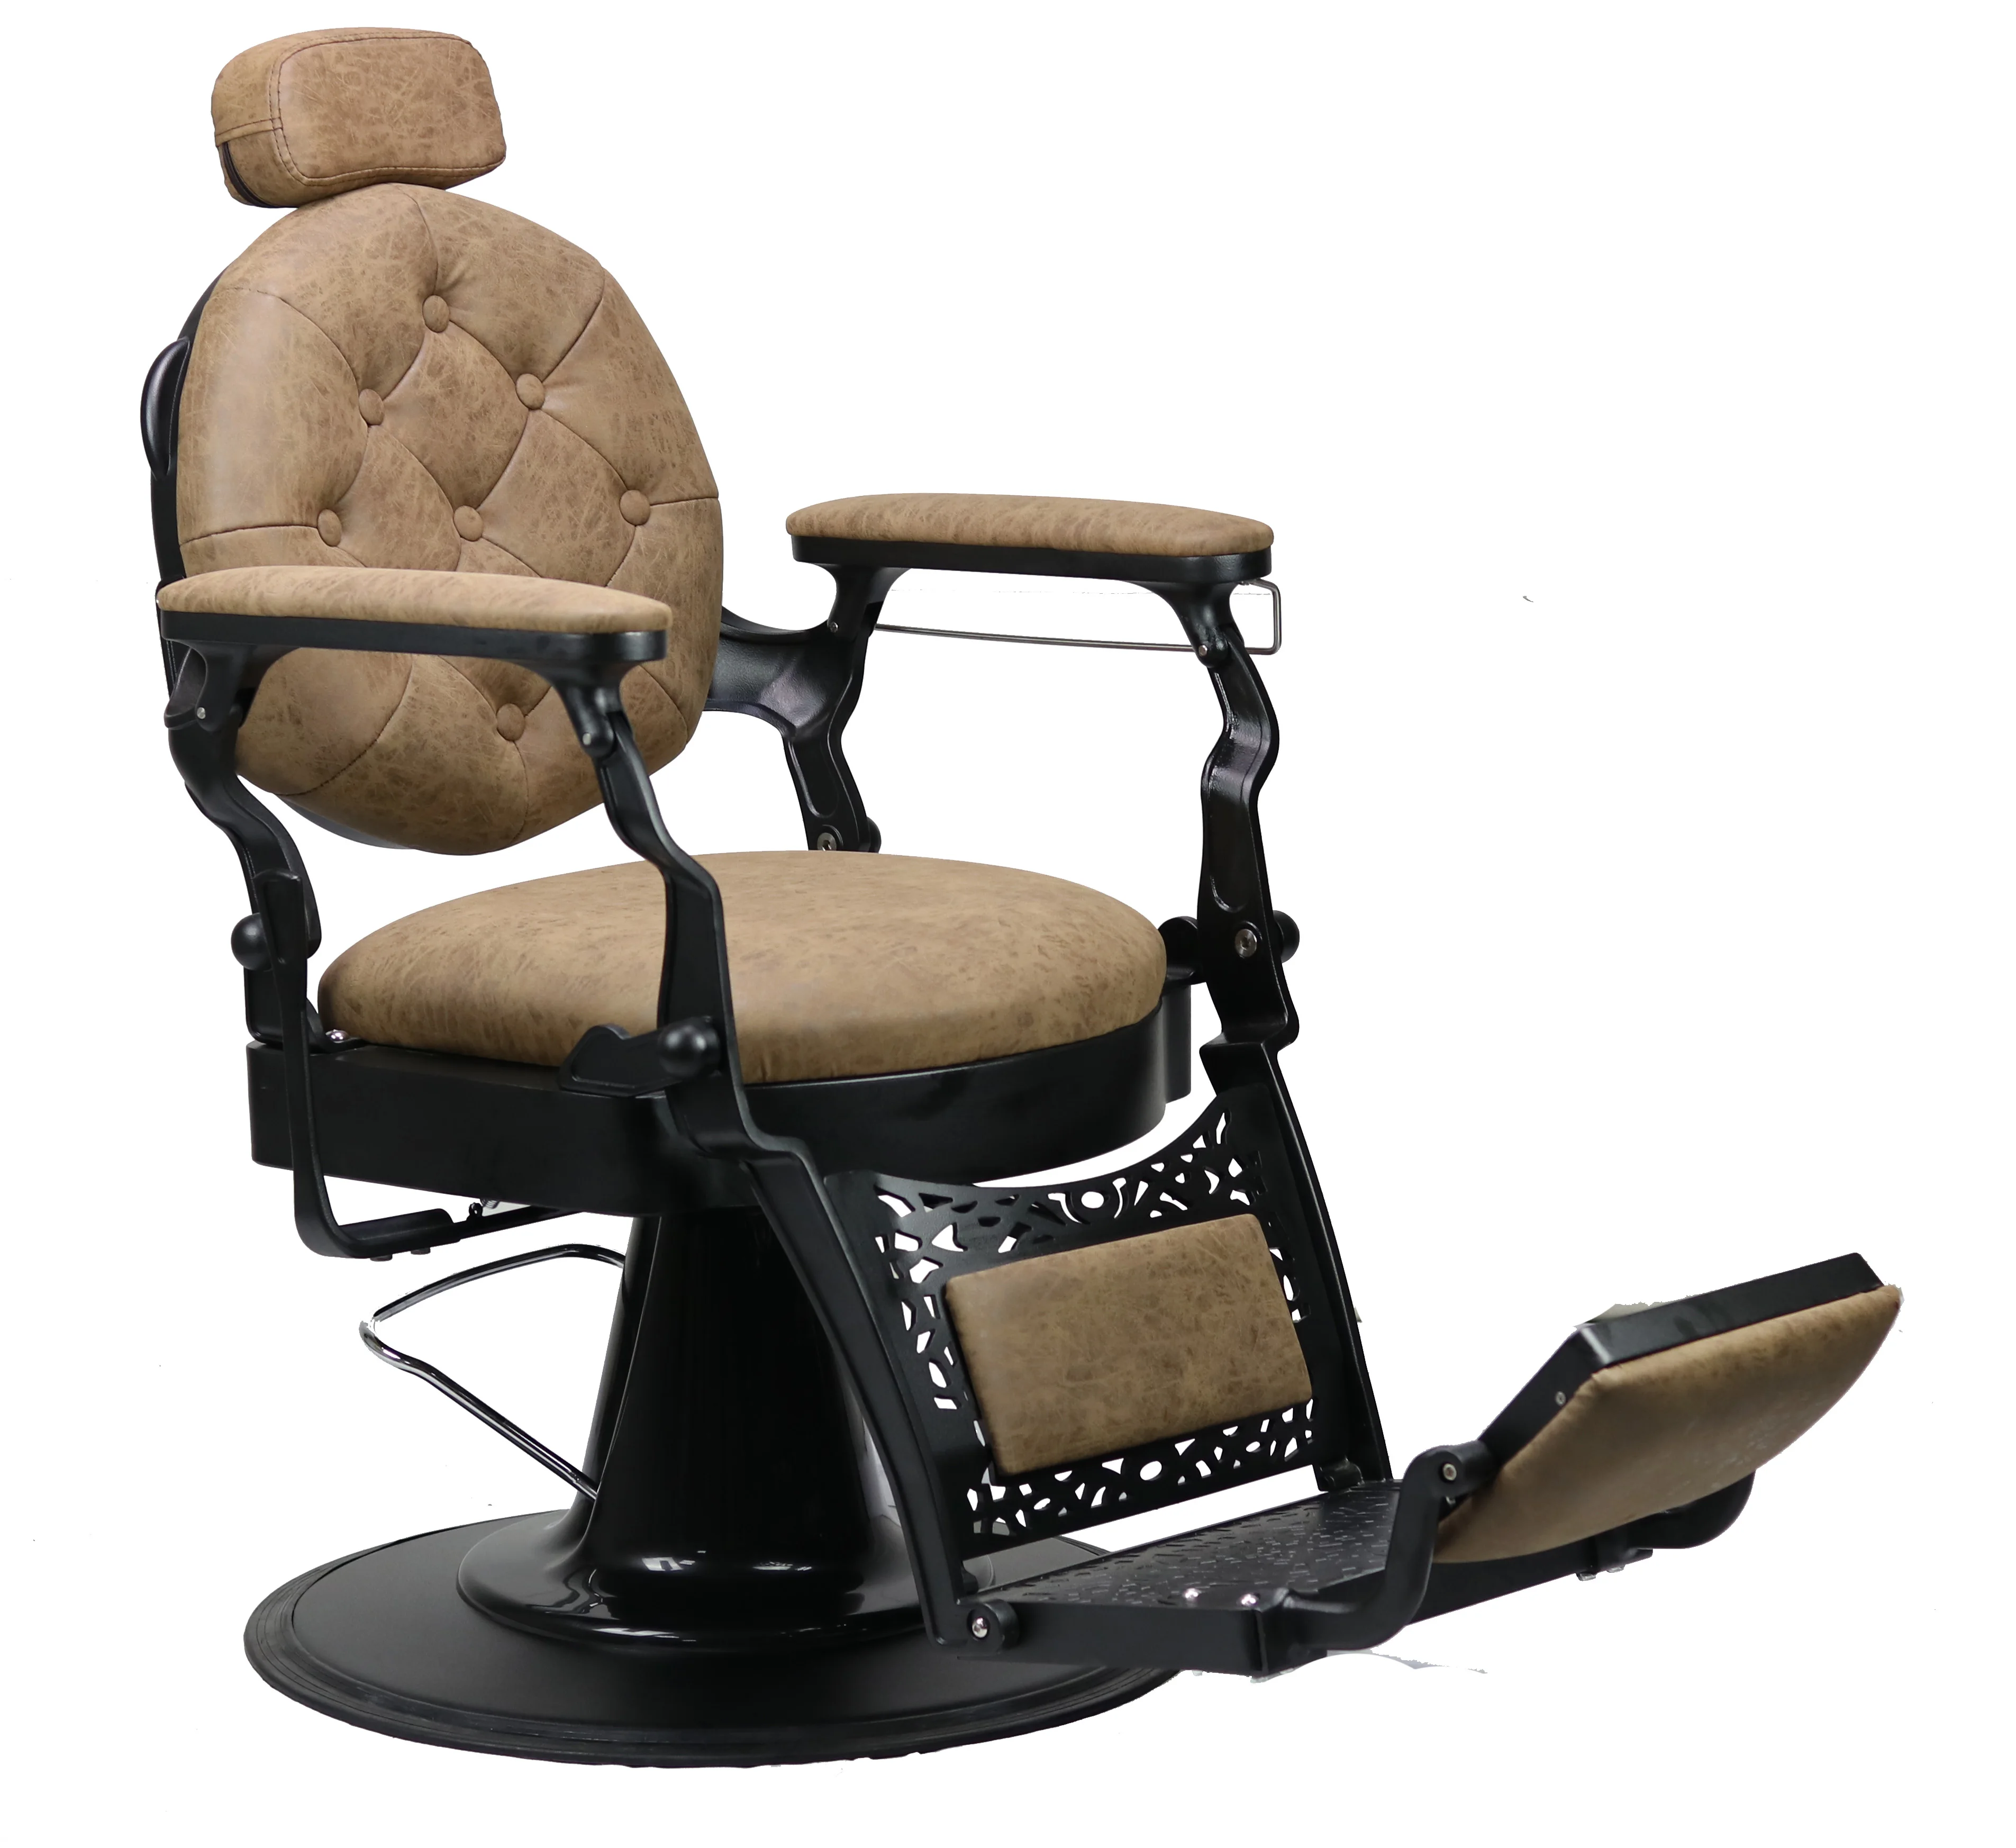 Прочный парикмахерский стул DTY, откидной цилиндрический механизм для продажи, поставки amazon, США (62290824372)